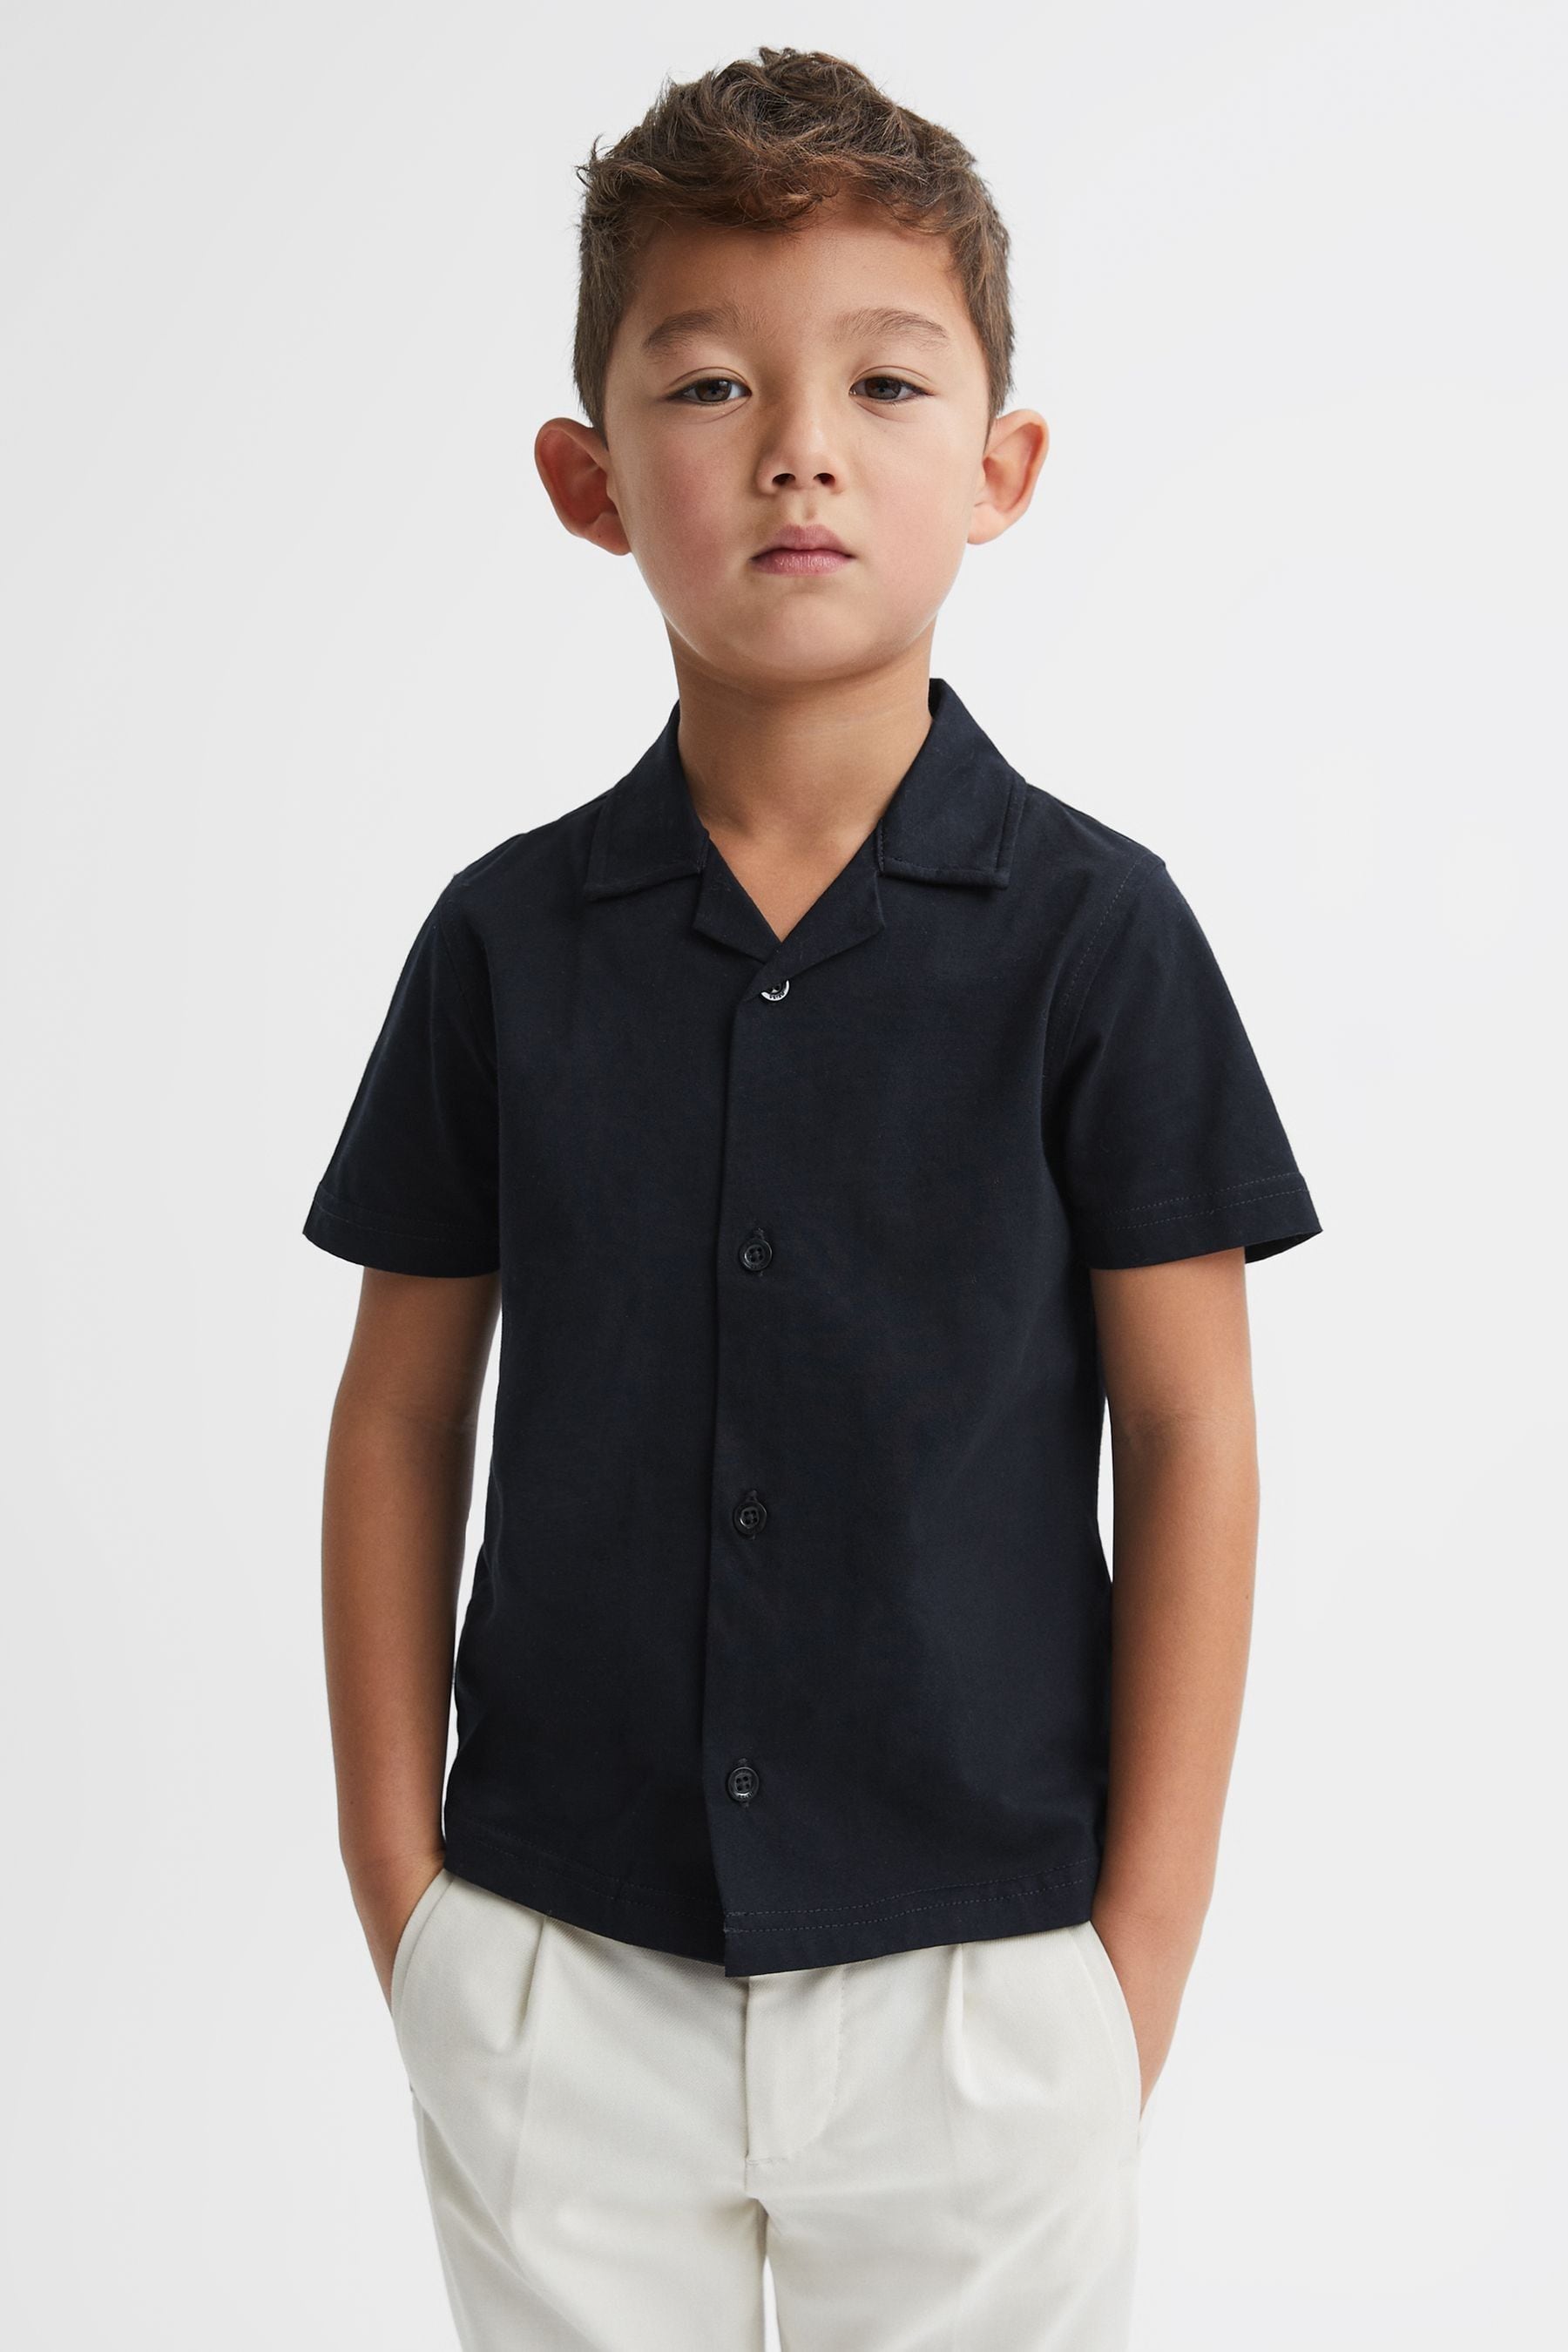 Reiss Kids' Caspa - Navy Cotton Cuban Collar Shirt, Uk 12-13 Yrs